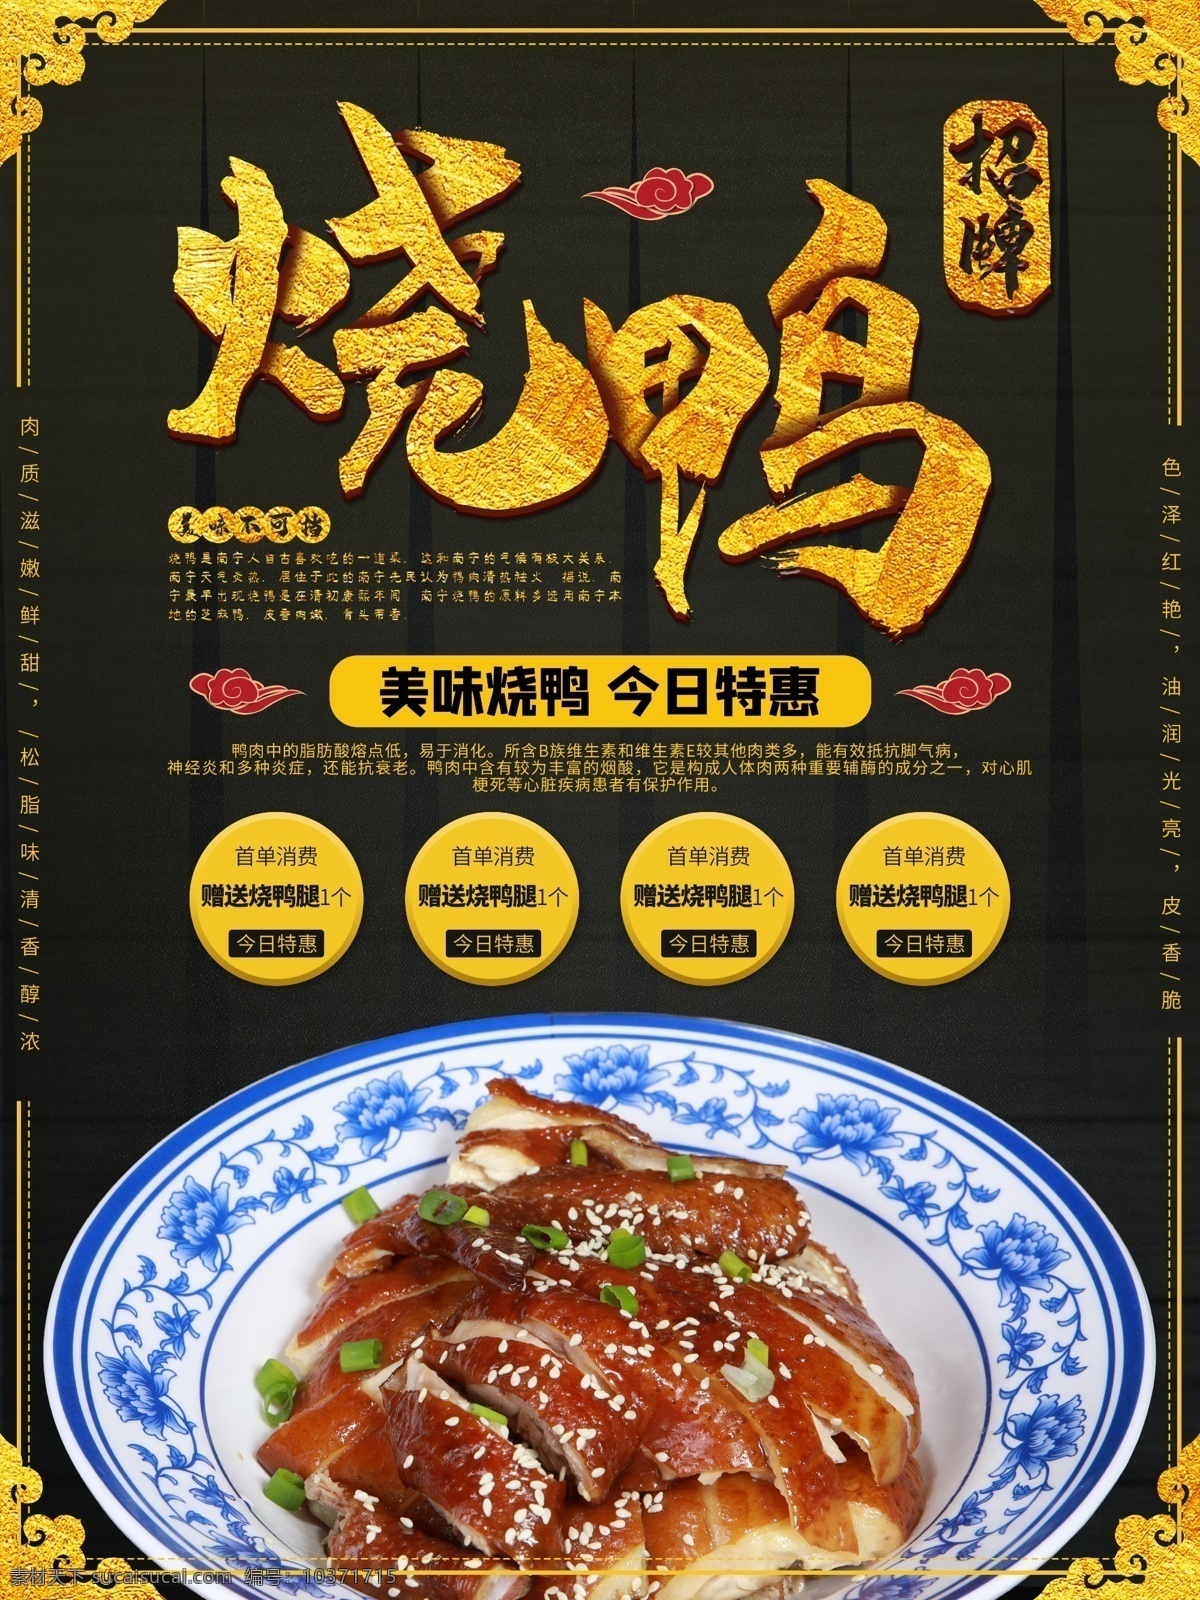 烤鸭海报图片 烤鸭海报 特色烤鸭 北京烤鸭 美食促销海报 餐厅海报 分层